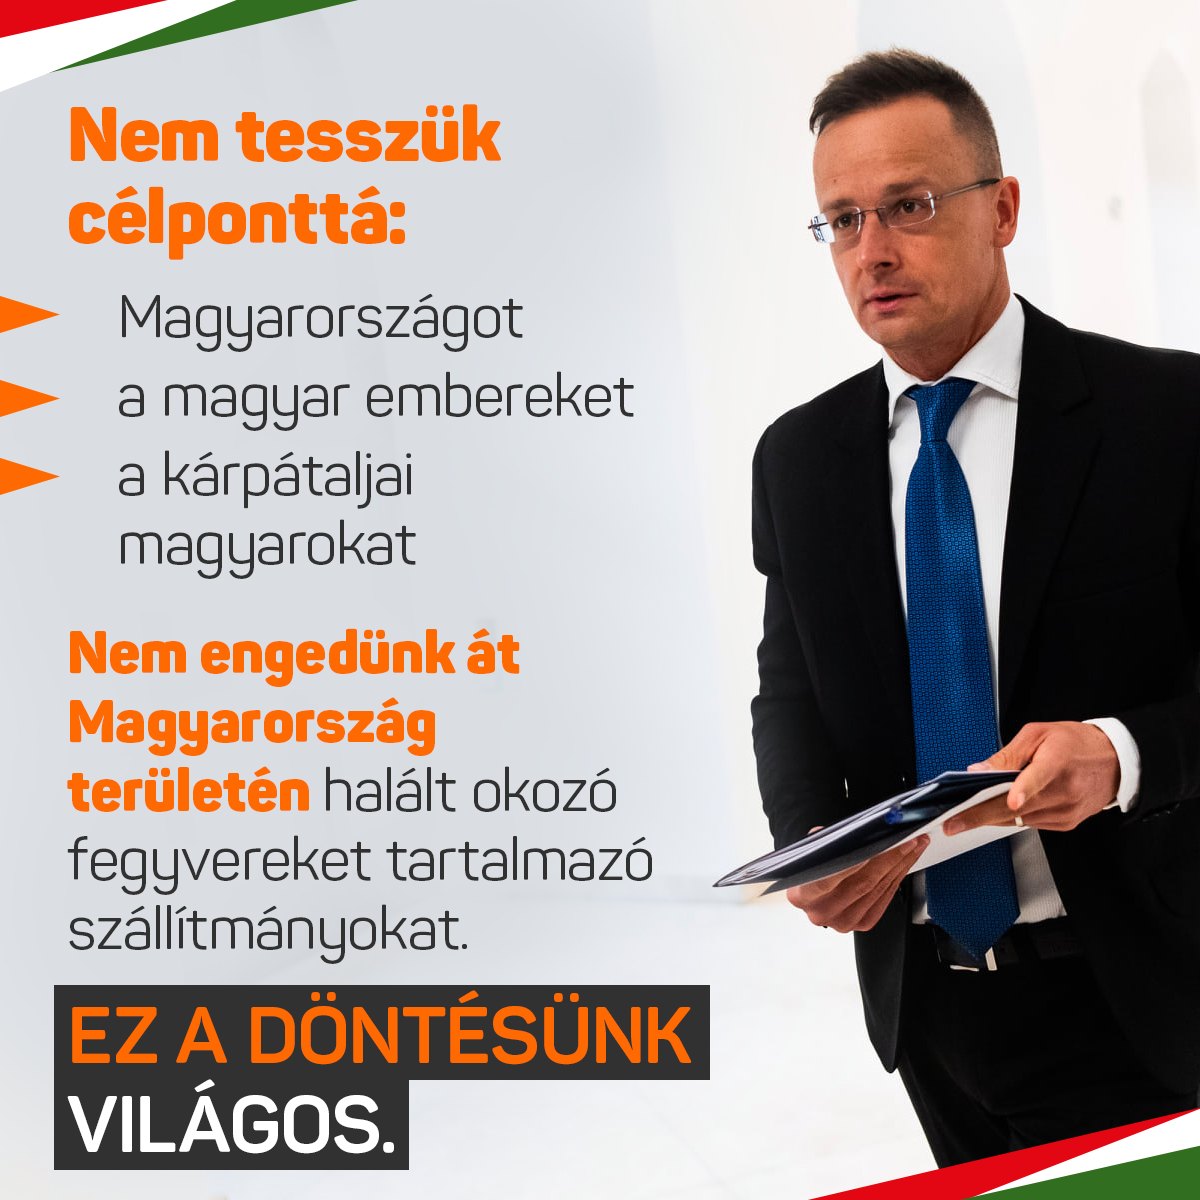 Nem tesszük célponttá Magyarországot. Nem tesszük célponttá a magyar embereket, nem tesszük célponttá a kárpátaljai magyarokat és nem engedünk át Magyarország területén halált okozó fegyvereket tartalmazó szállítmányokat.